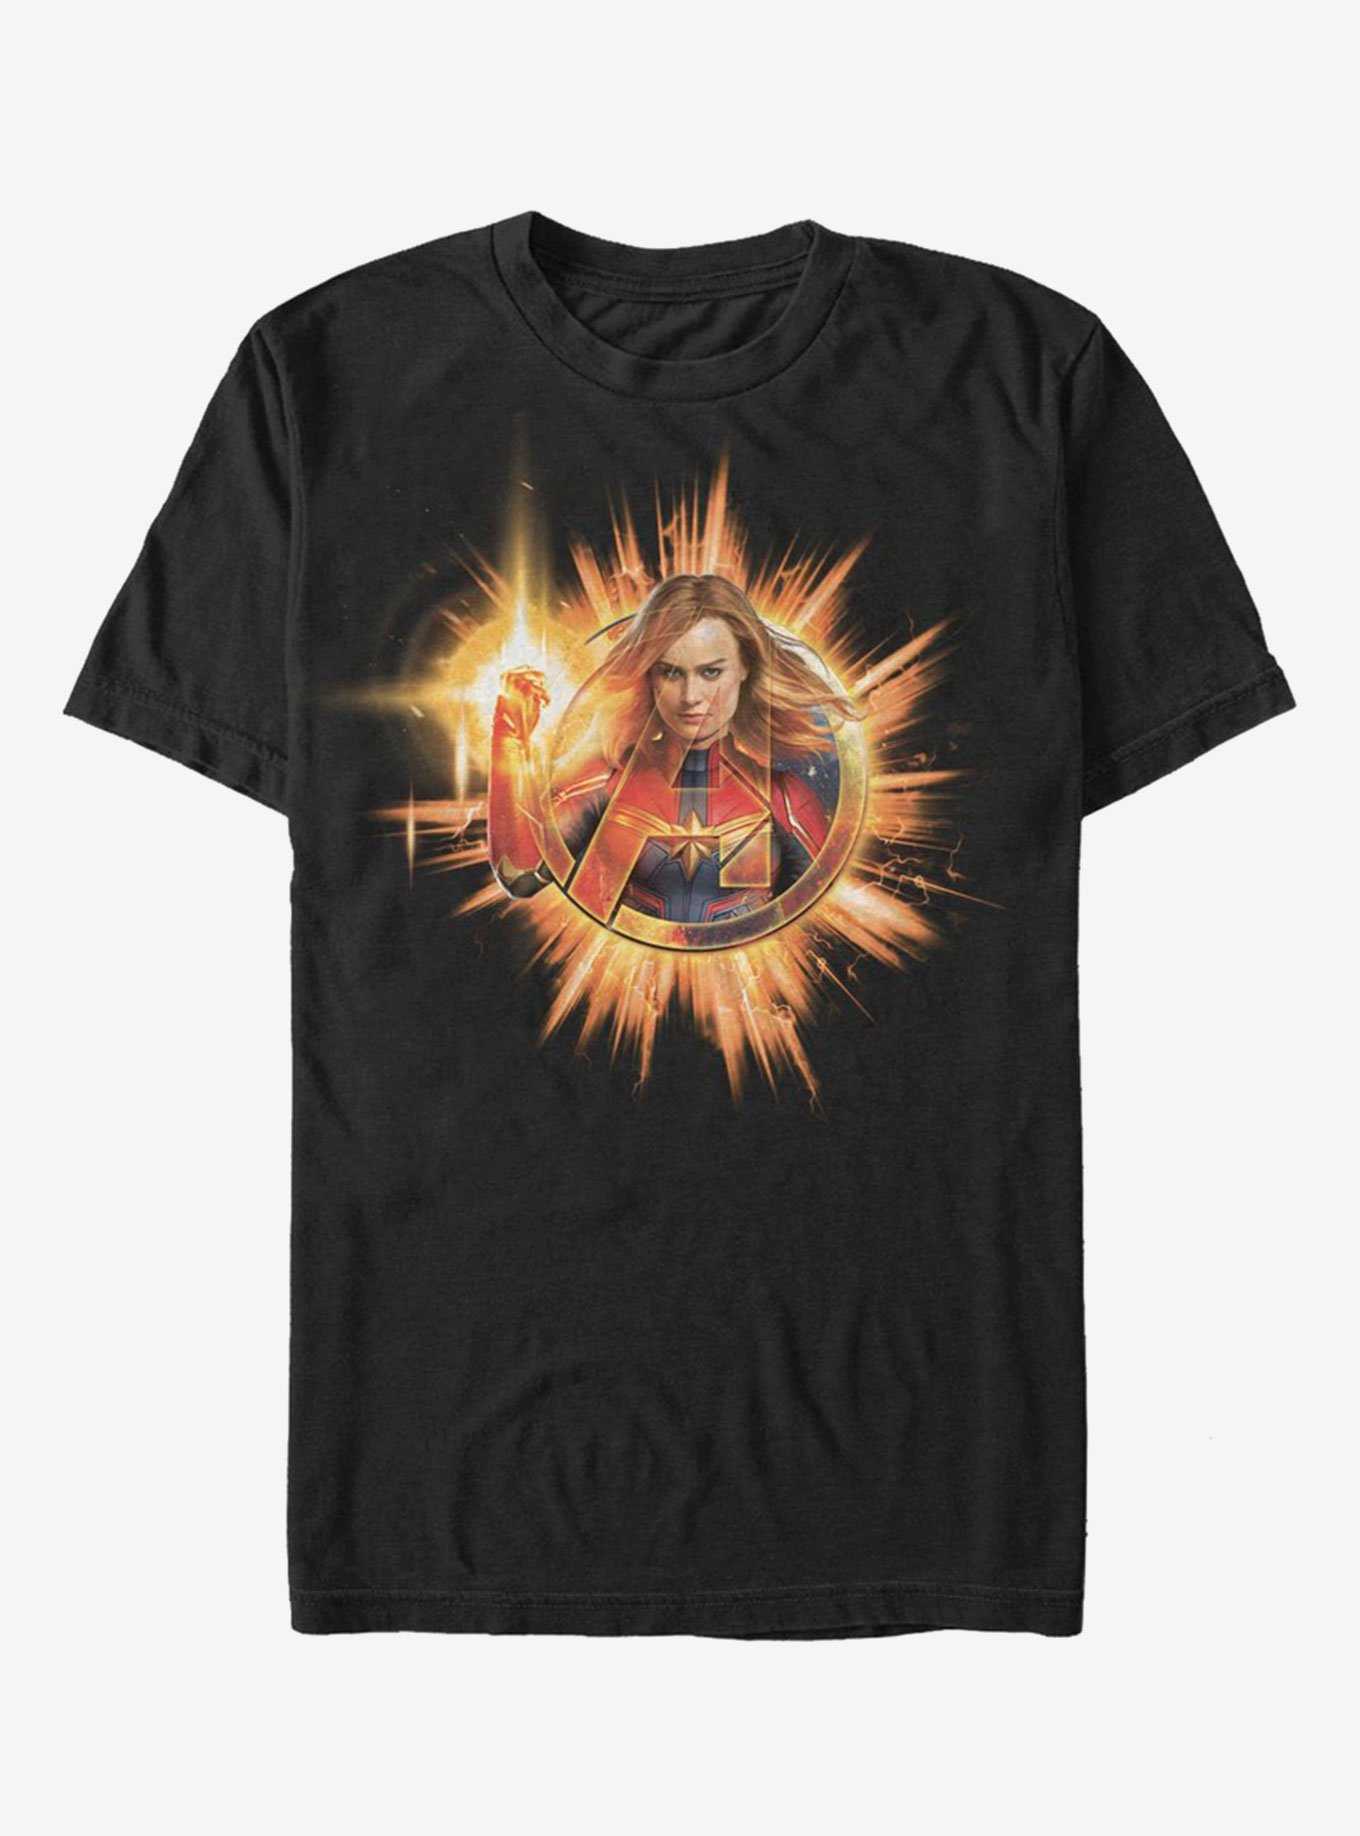 Marvel Avengers Endgame Fire Marvel T-Shirt, , hi-res